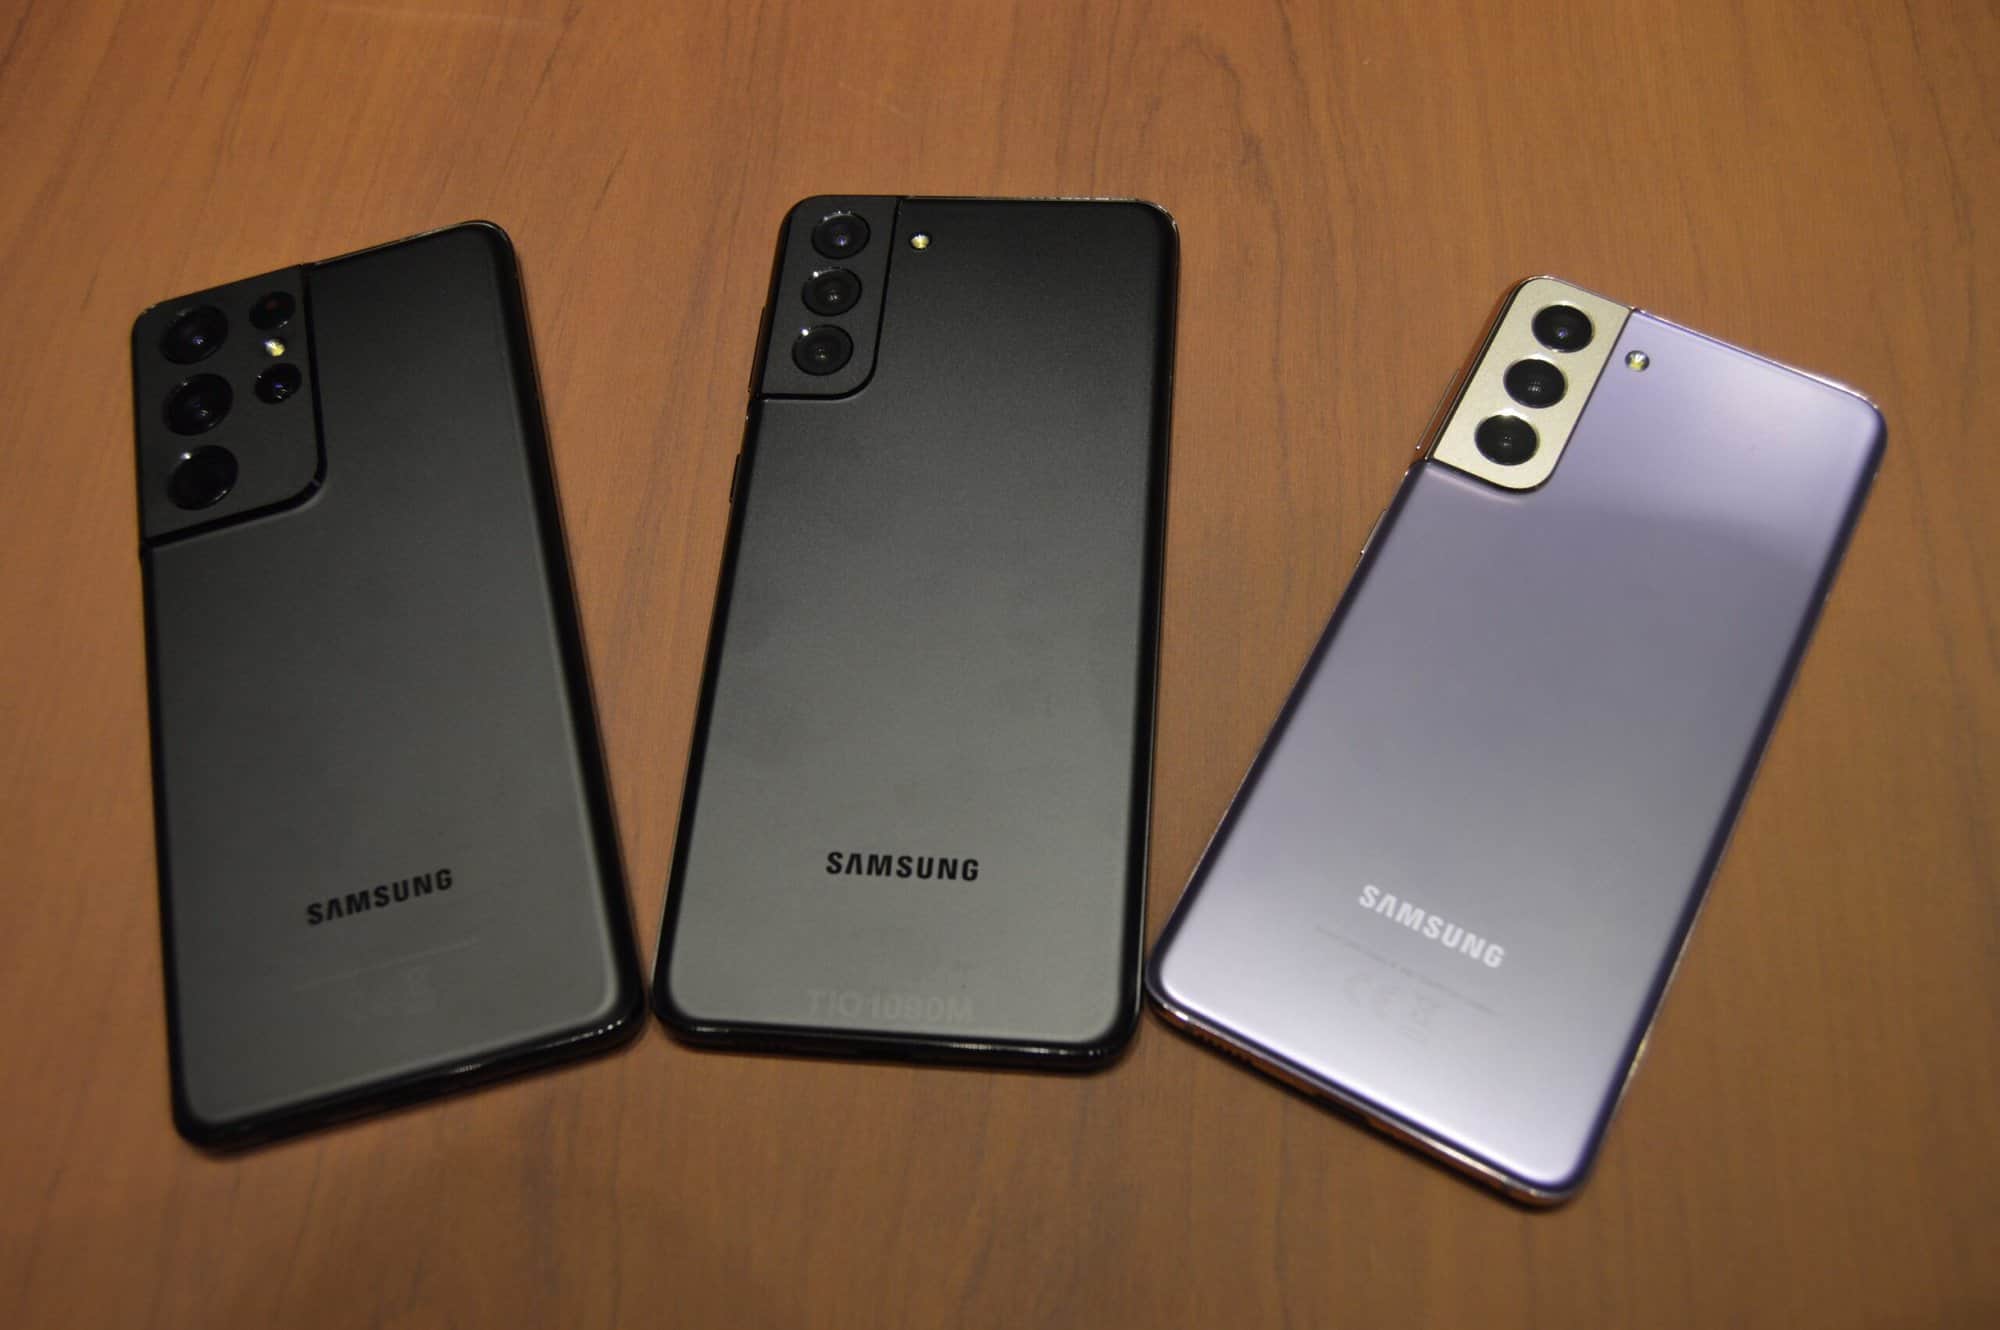 Samsung Galaxy S21, S21+ e S21 Ultra chegam ao Brasil por a partir